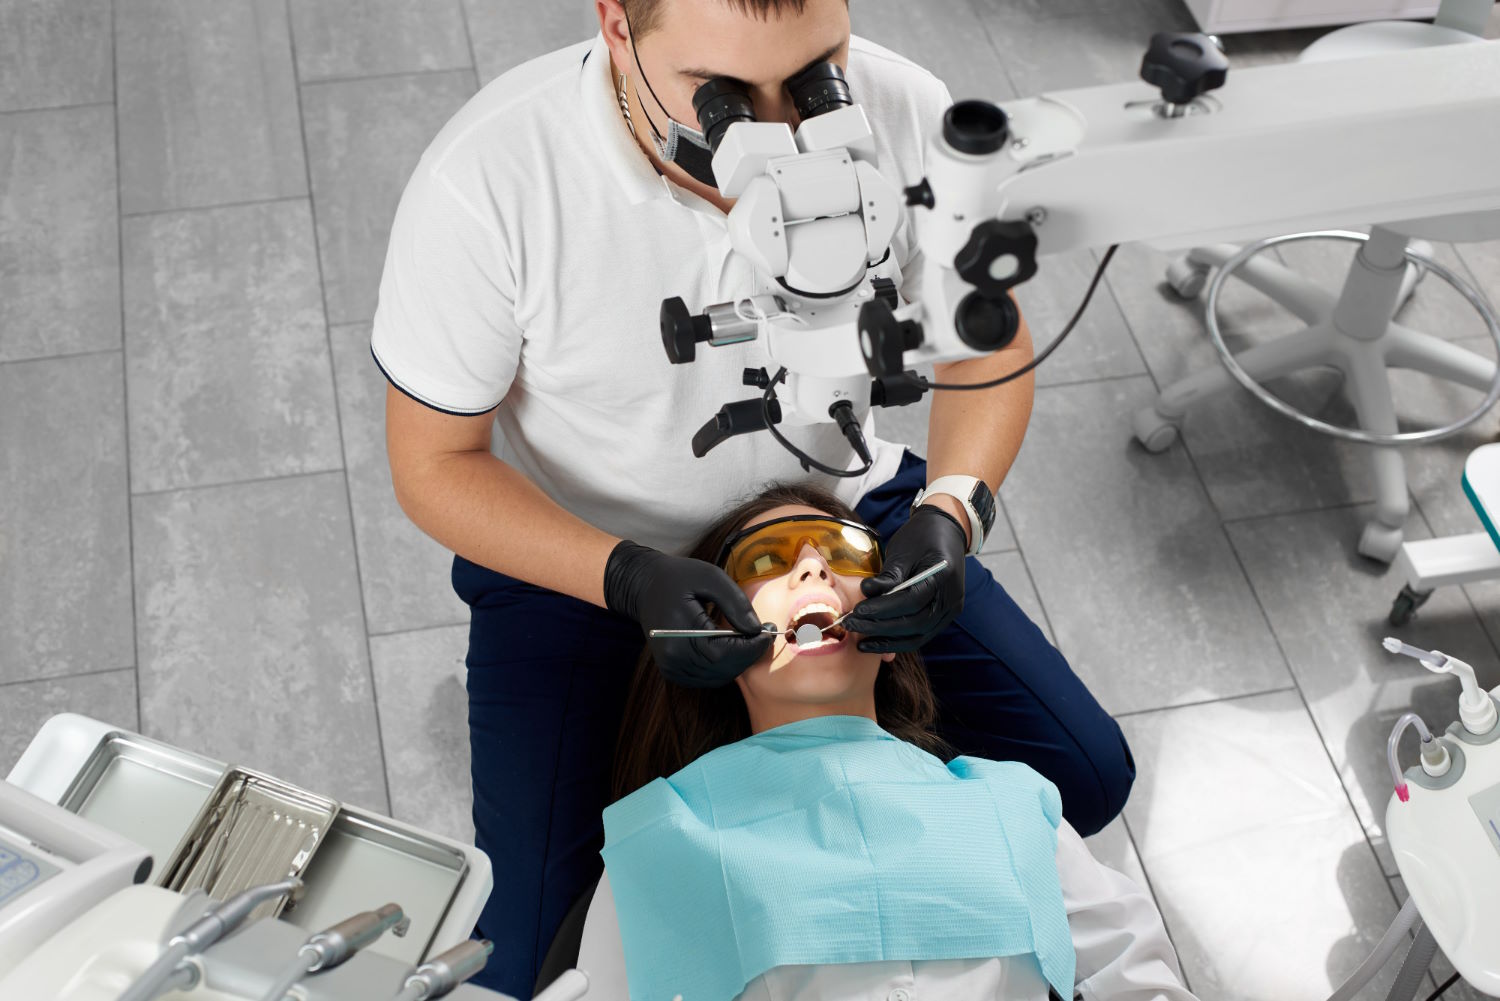 Zaawansowane metody stomatologii mikroskopowej – korzyści płynące z precyzyjnego leczenia zębów przy użyciu powiększenia